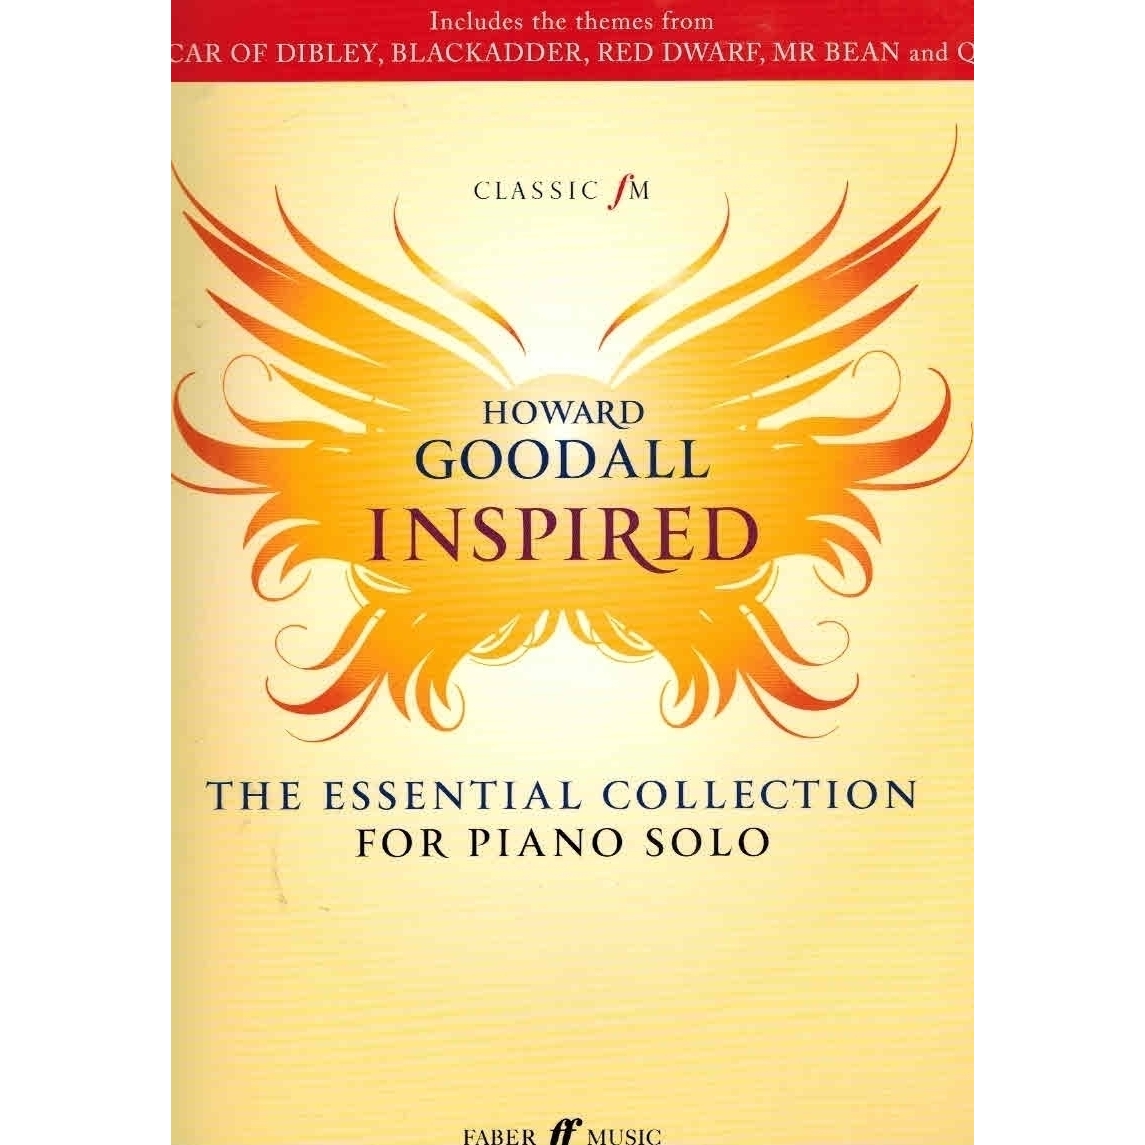 Howard goodall books